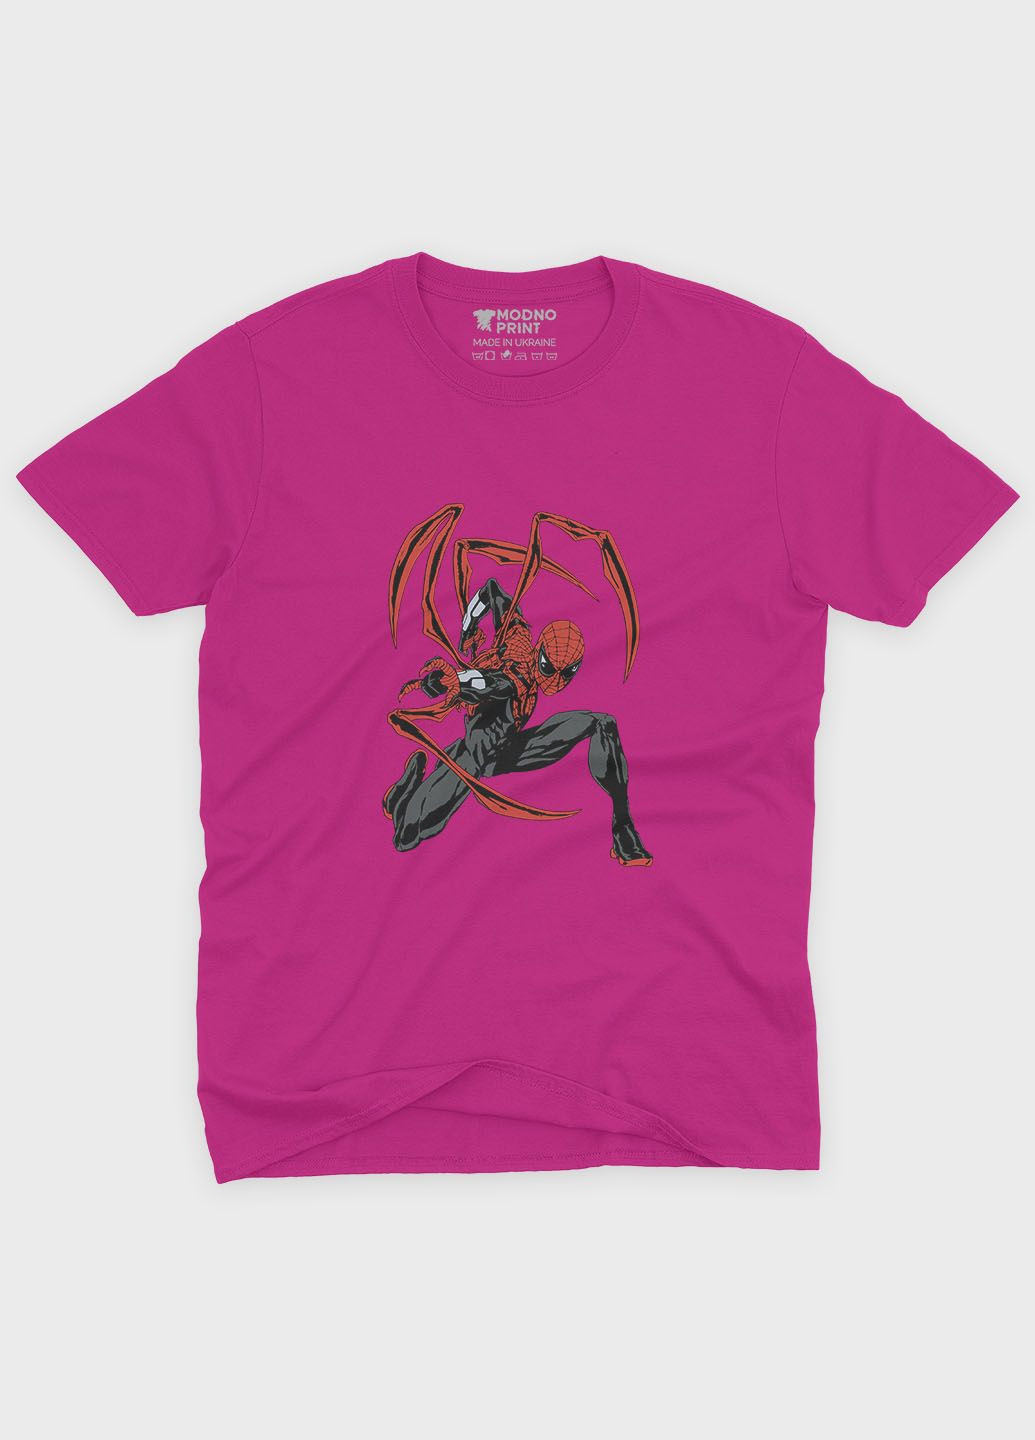 Розовая демисезонная футболка для мальчика с принтом супергероя - человек-паук (ts001-1-fuxj-006-014-115-b) Modno